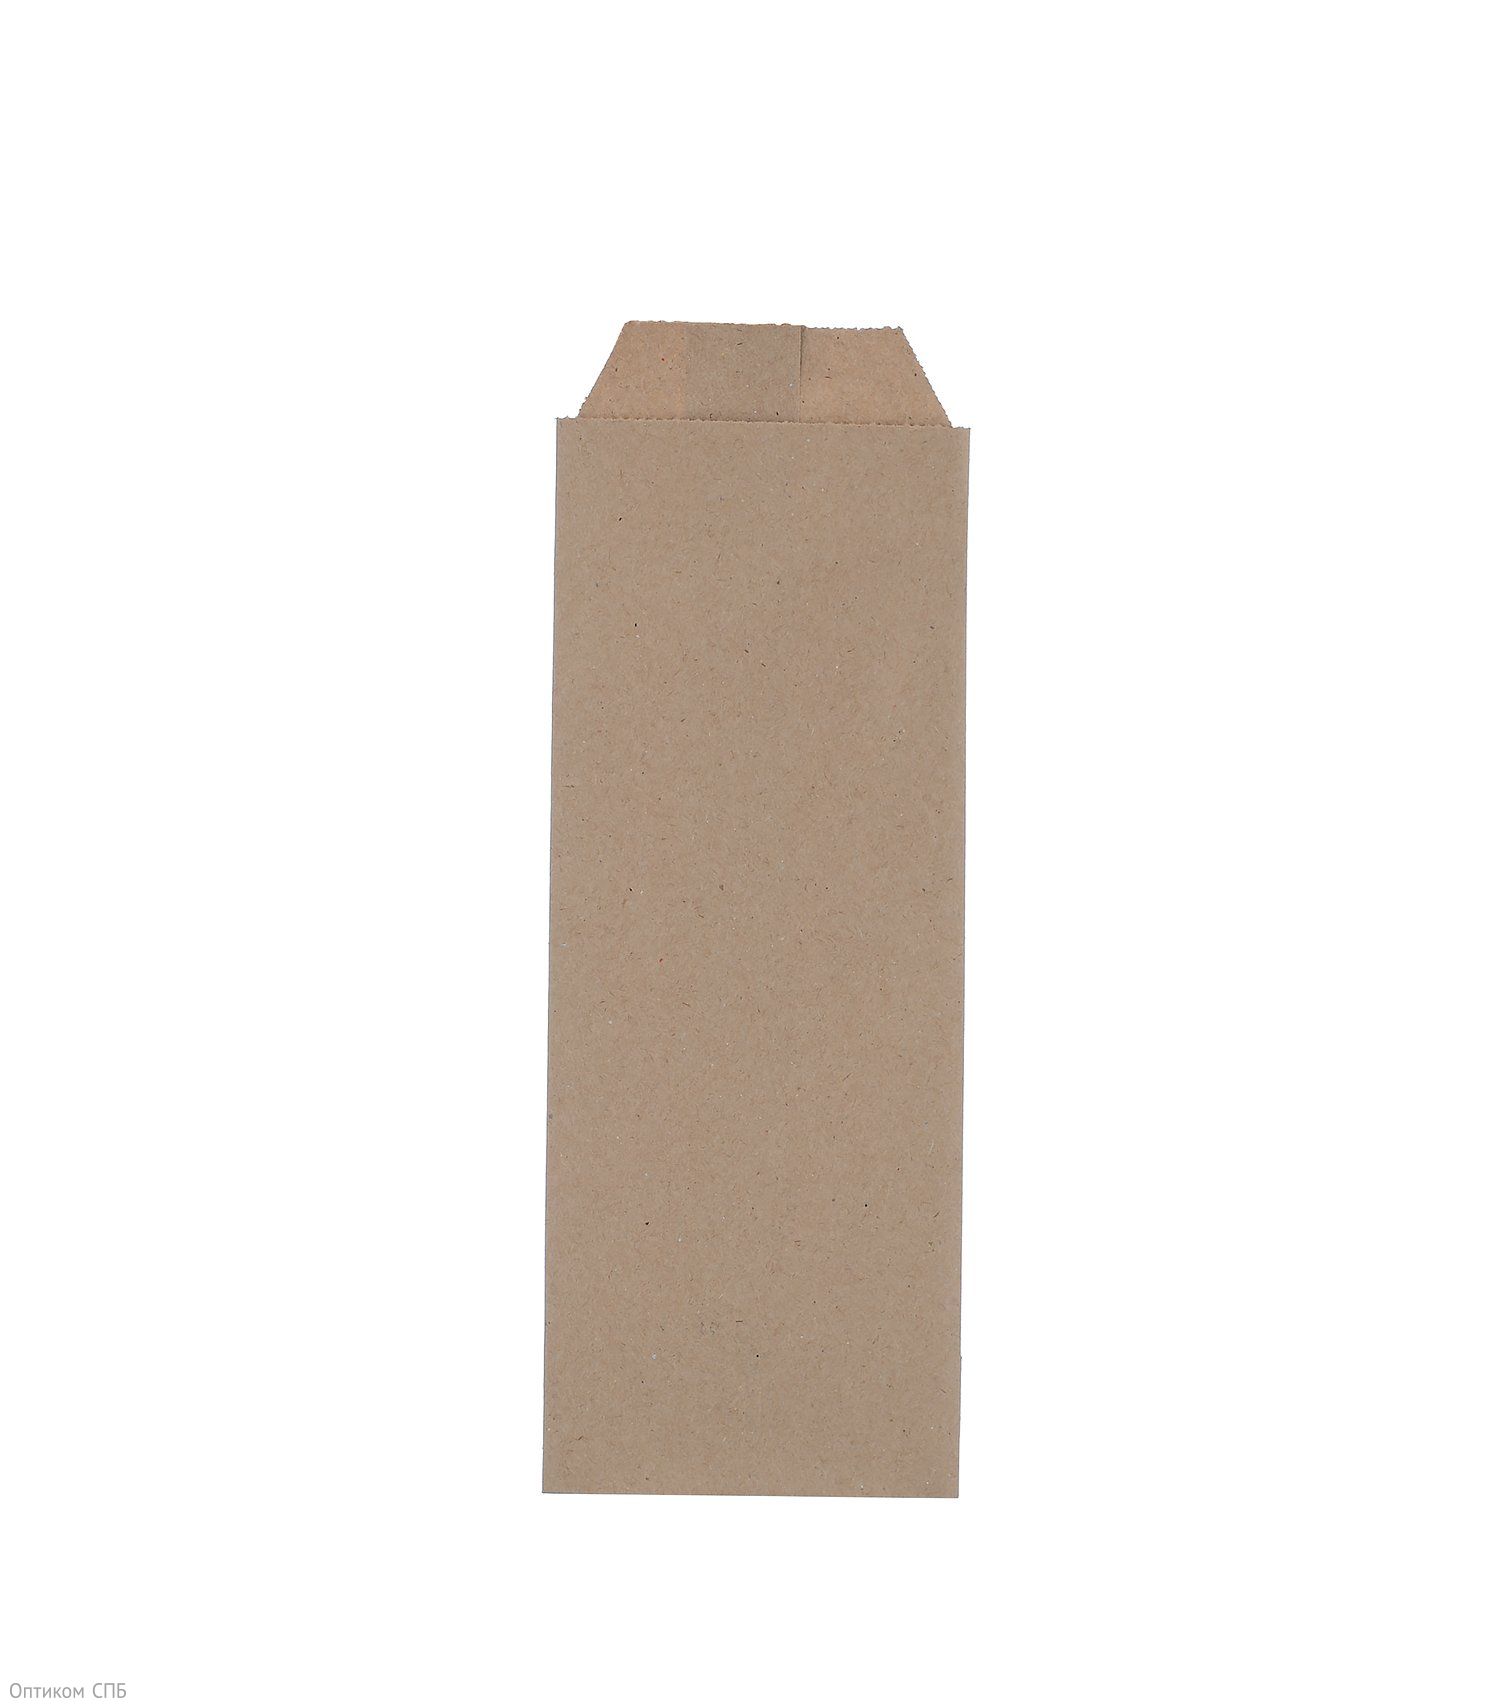 Бумажный пакет с клапаном в форме конверта подходит для упаковки легких покупок, а также сохранить окружающую среду, благодаря использованию экологически чистых материалов. Размер пакета 80х220 мм. Изготовлен из крафтовой бумаги. Цвет коричневый. В упаковке 2000 штук.